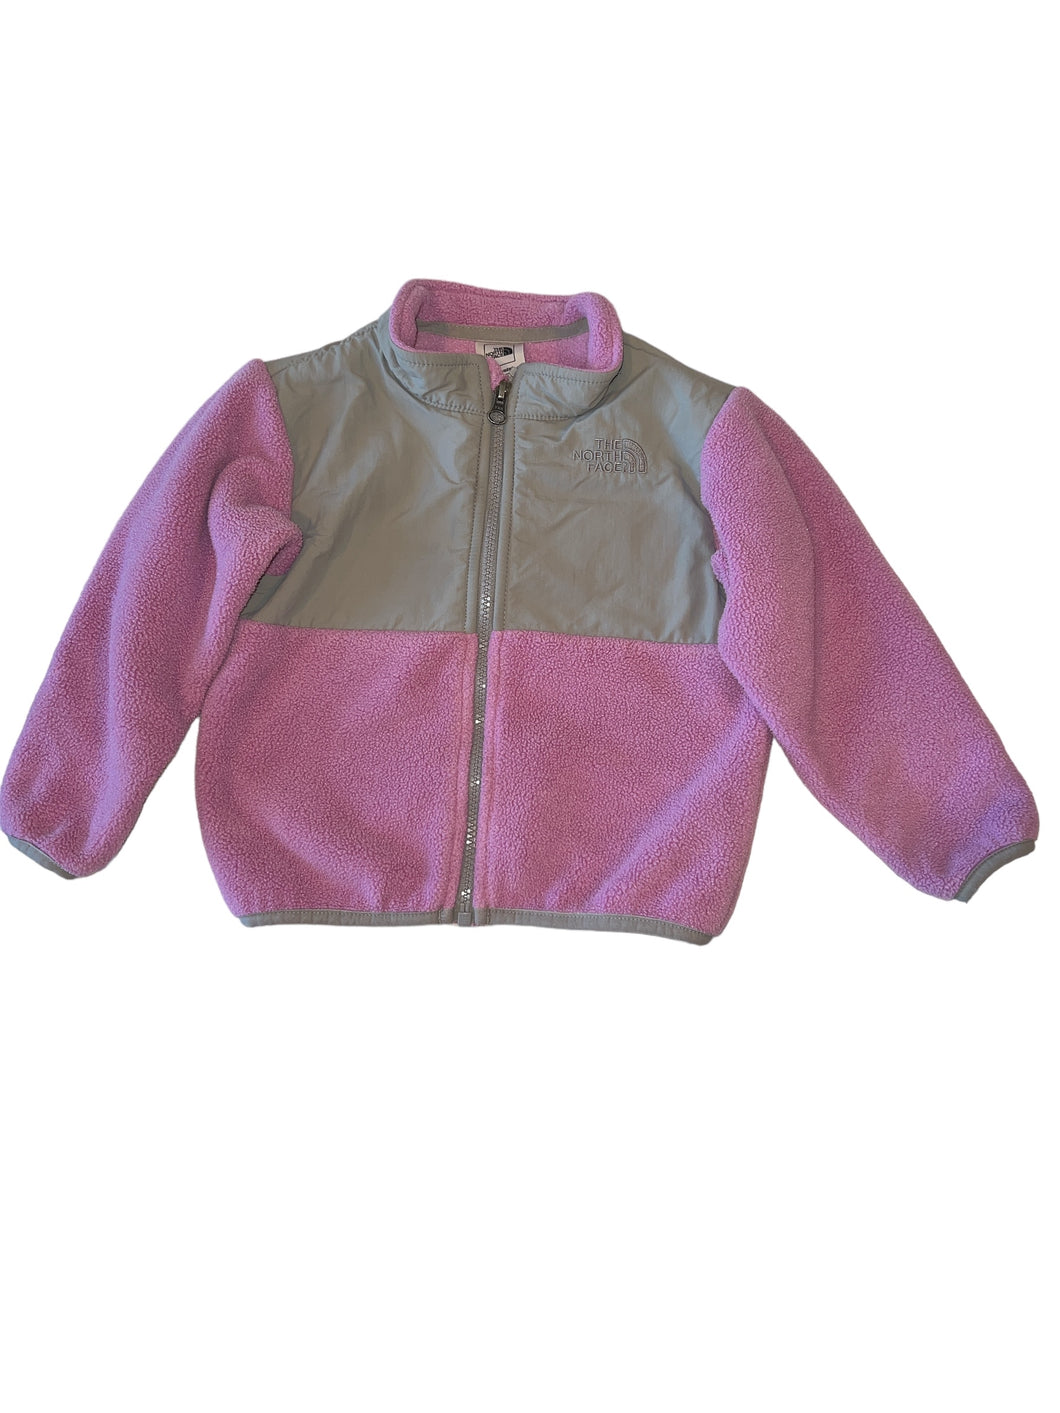 Northface baby girl Denali colorblock zip fleece jacket 18-24m